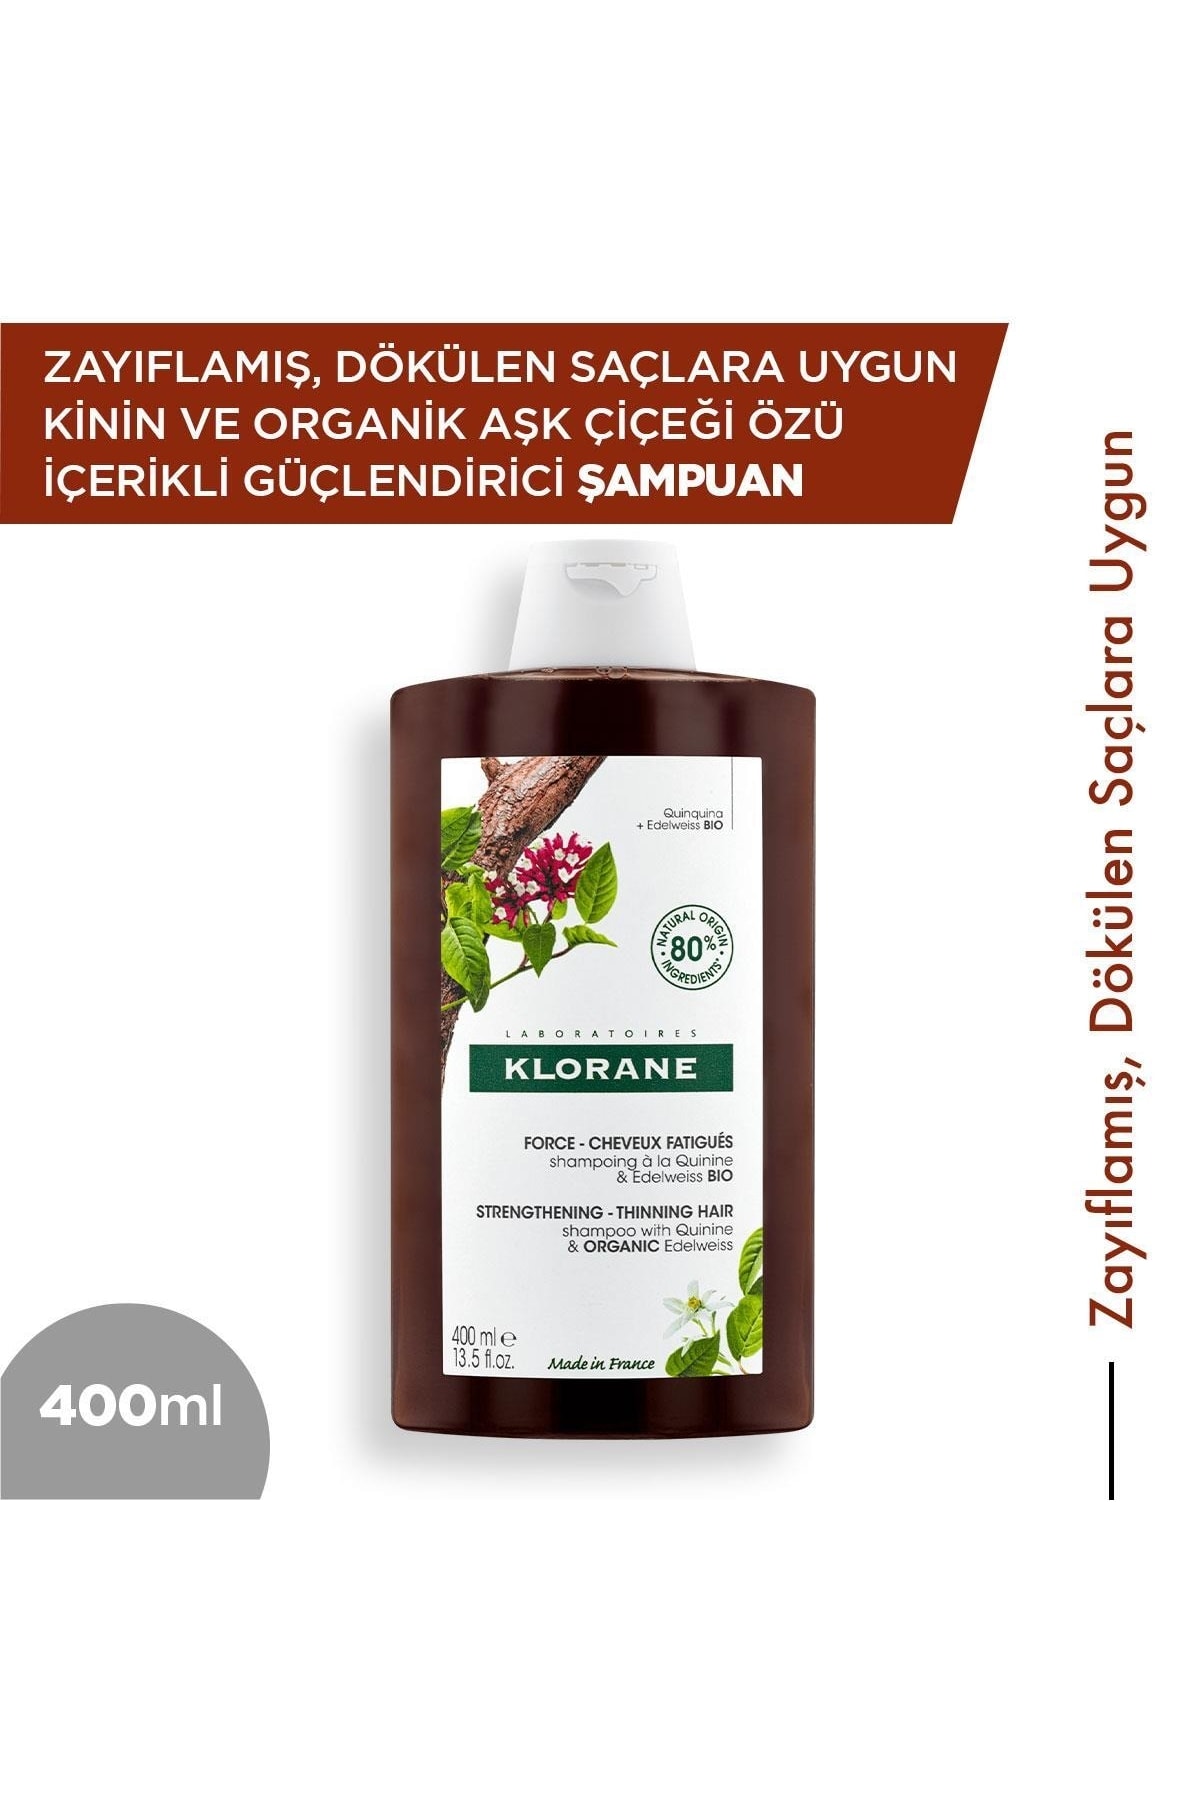 Klorane Kinin ve Organik Aşk Çiçeği Özlü Güçlendirici Şampuan 400 ml